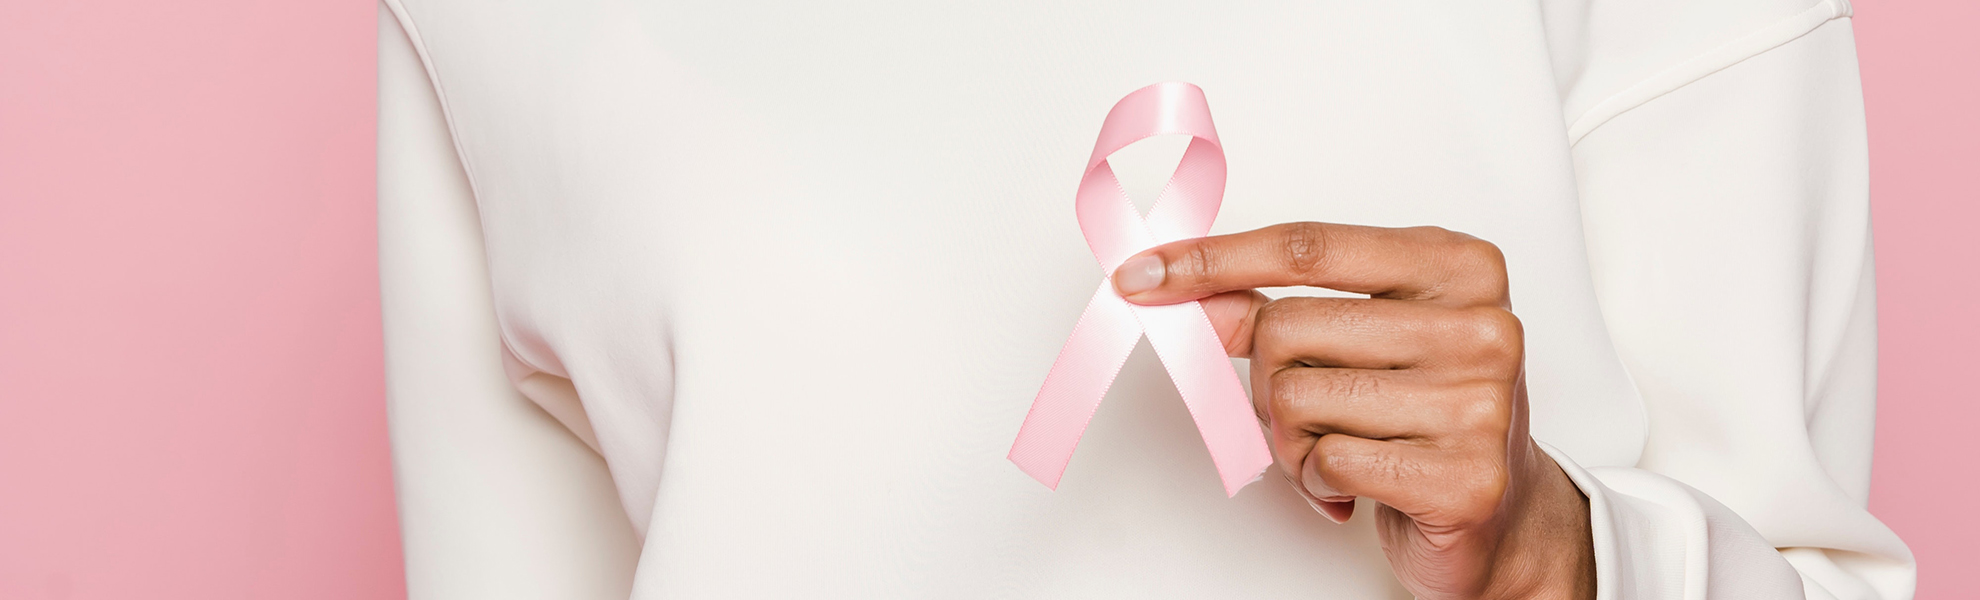 Diagnóstico precoz del cáncer de mama: cómo anticiparnos a la enfermedad